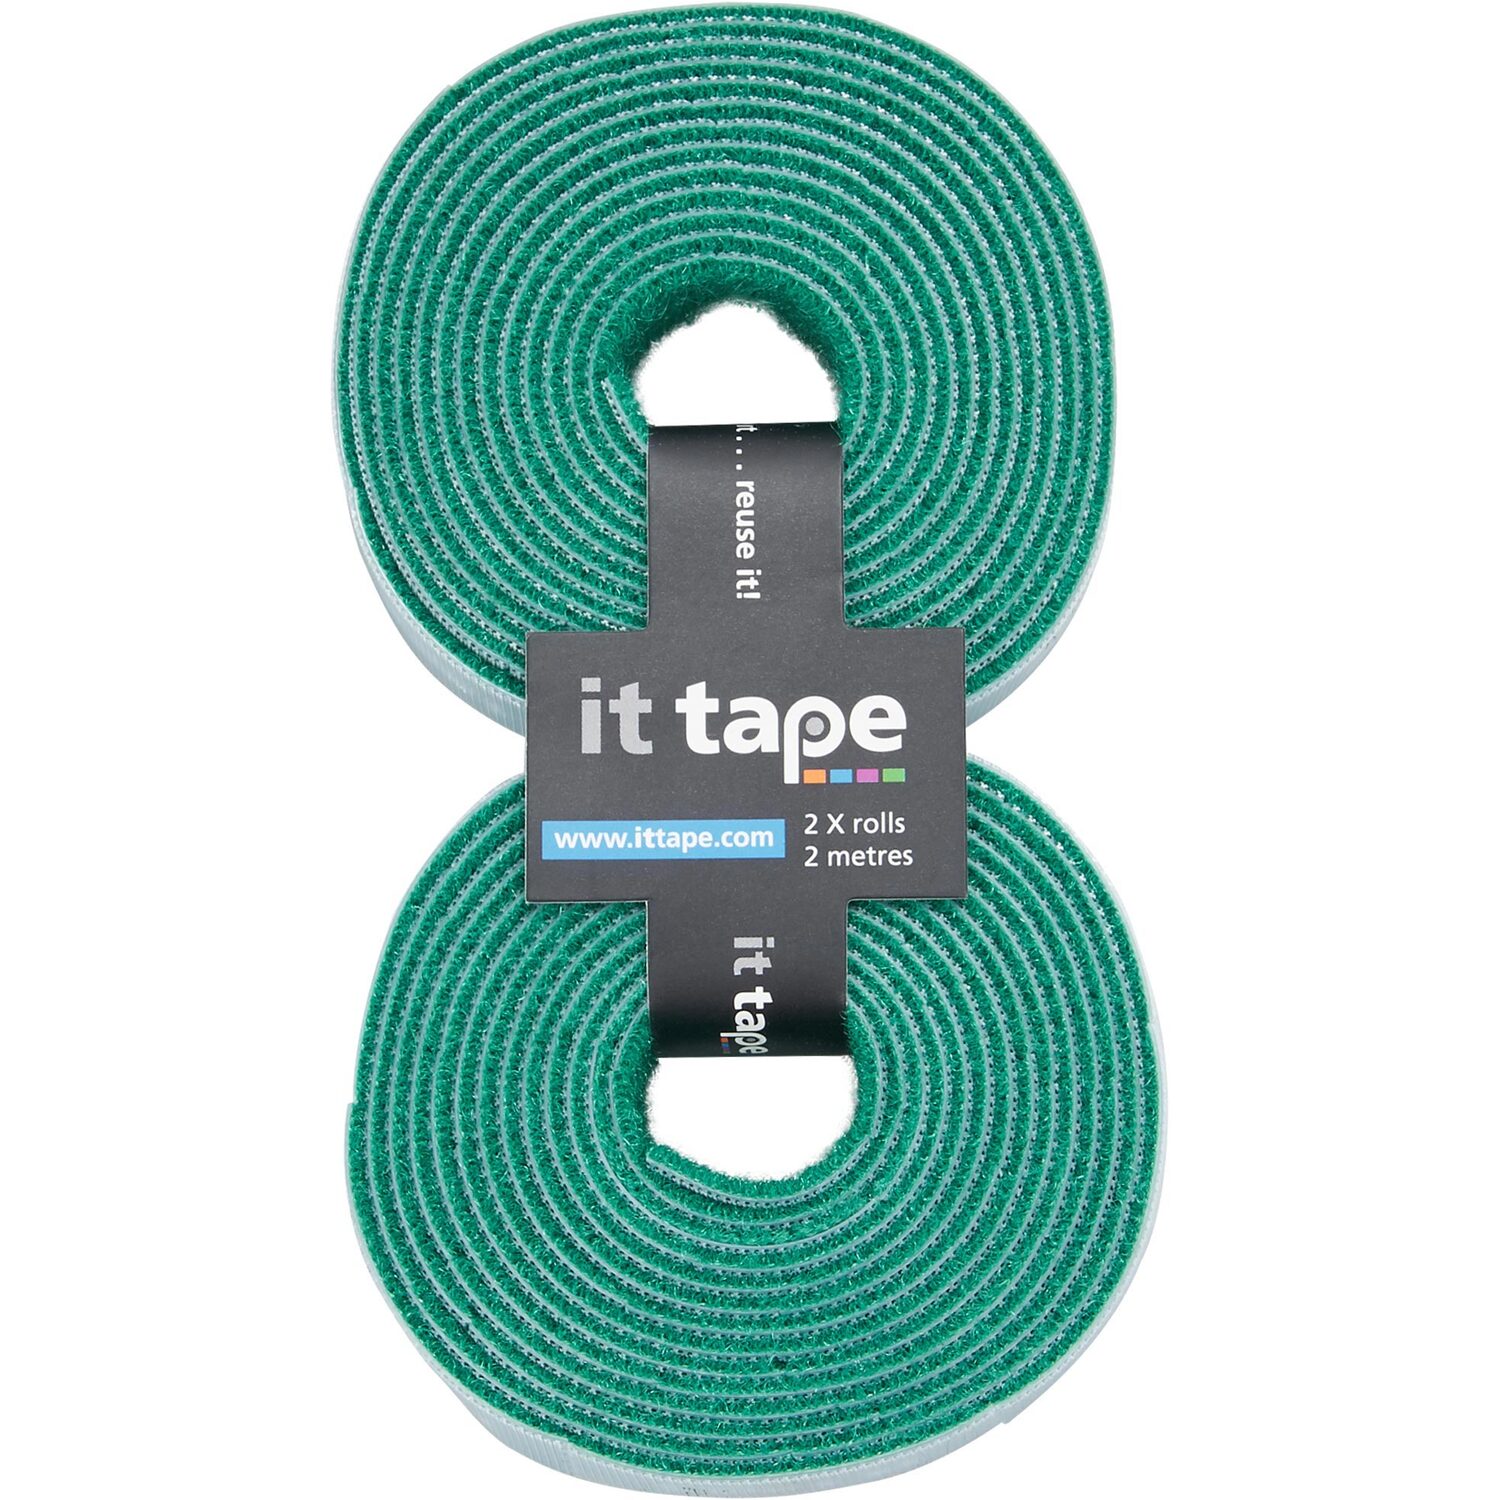 it tape Green Hook n Loop Refills 2 Pack Image 1